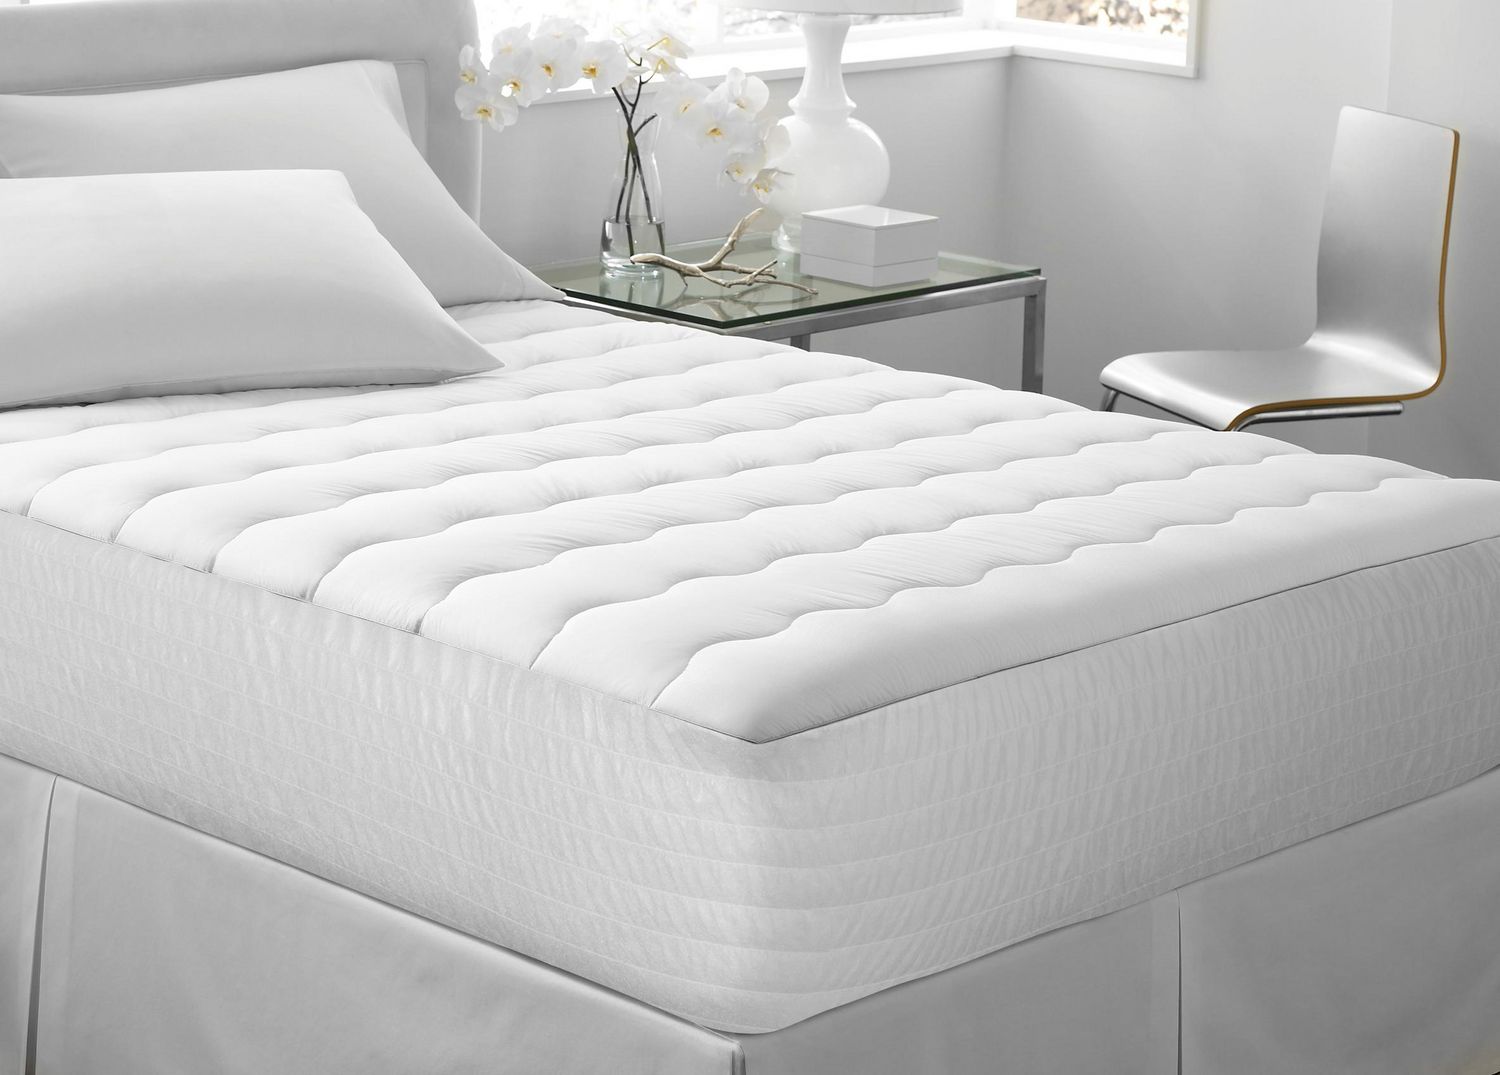 foam mattress pads walmart